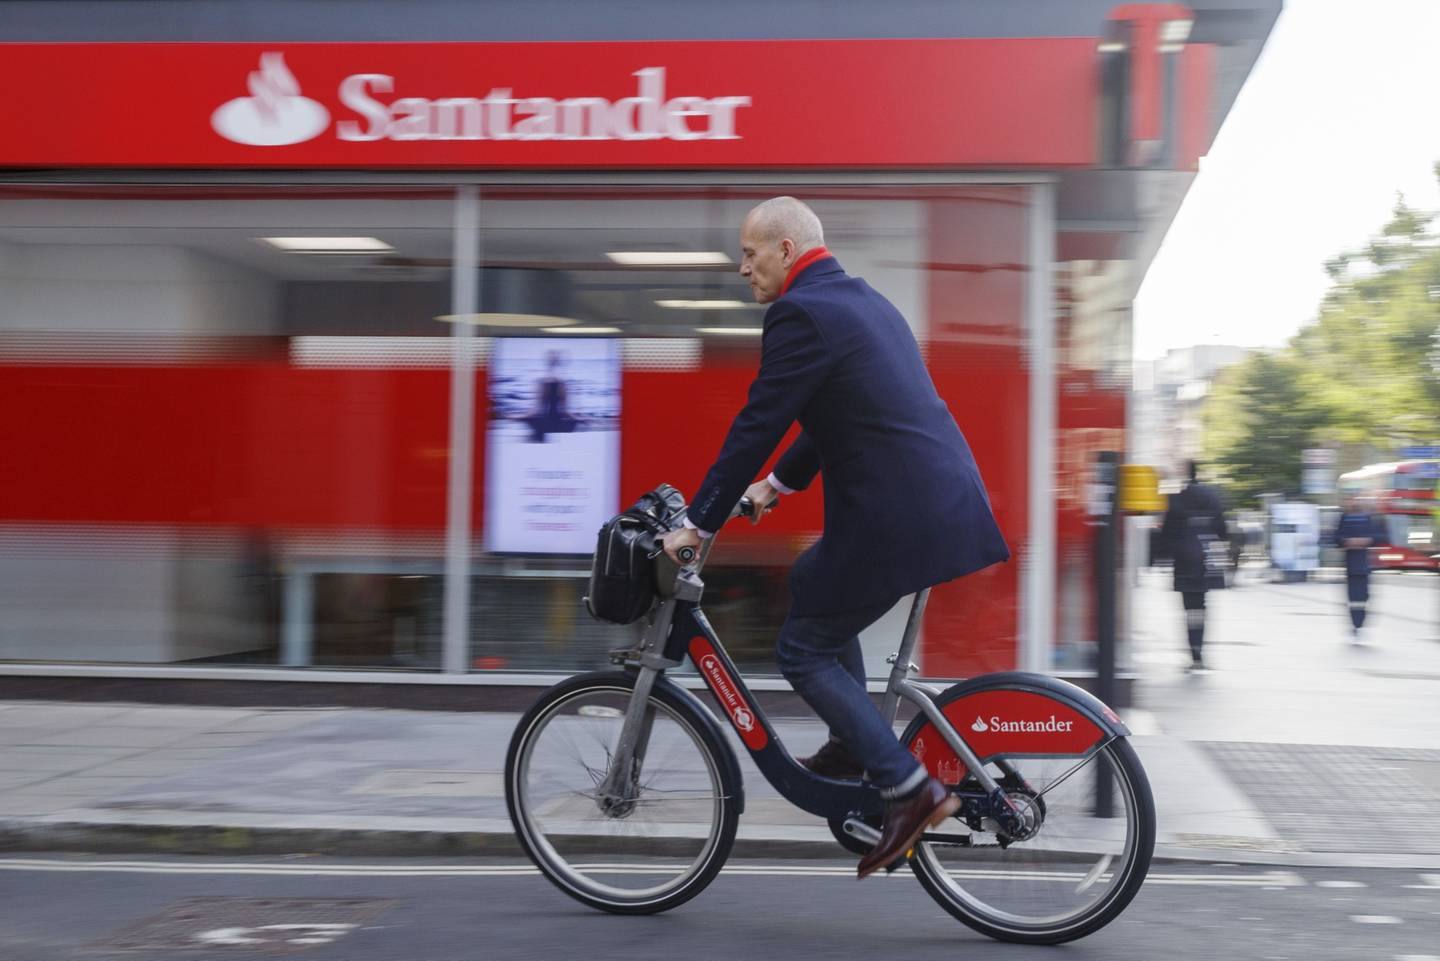 Banco Santander quedó fuera del proceso de compra de Banamex, tras presentar una oferta no vinculante por los activos de banca minorista, que fue desechada por Citigroup.